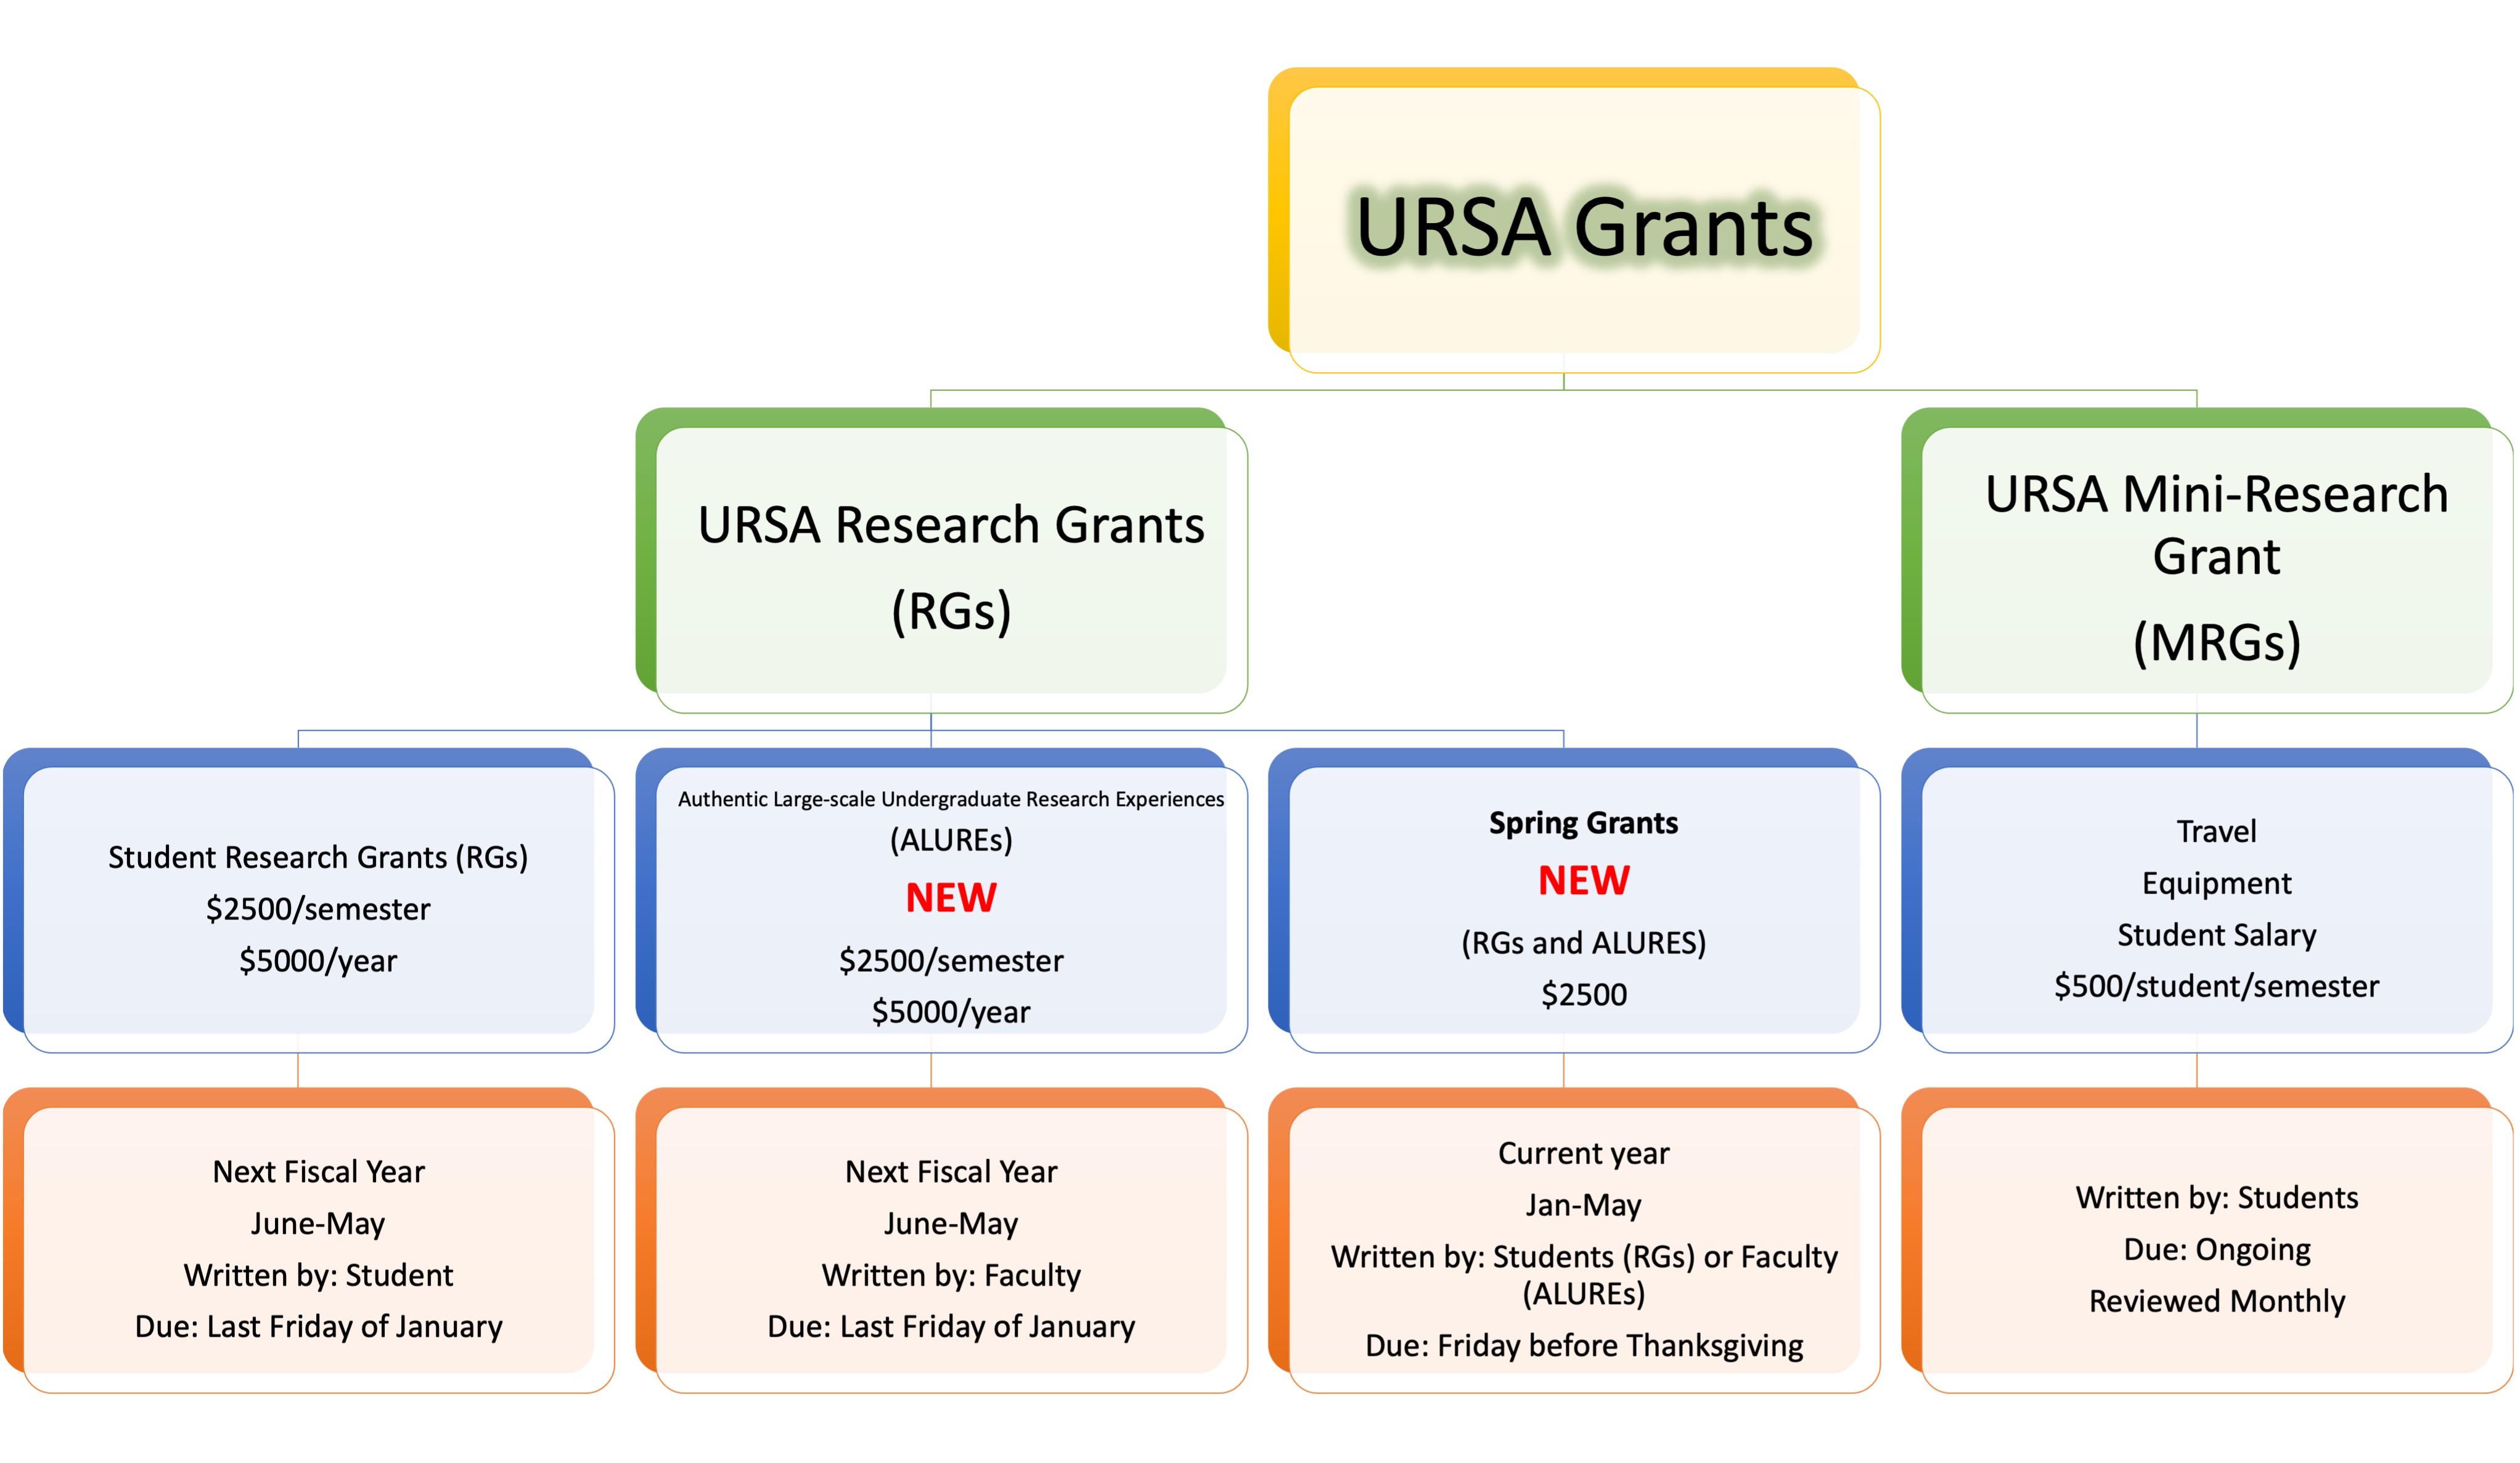 URSA Grants